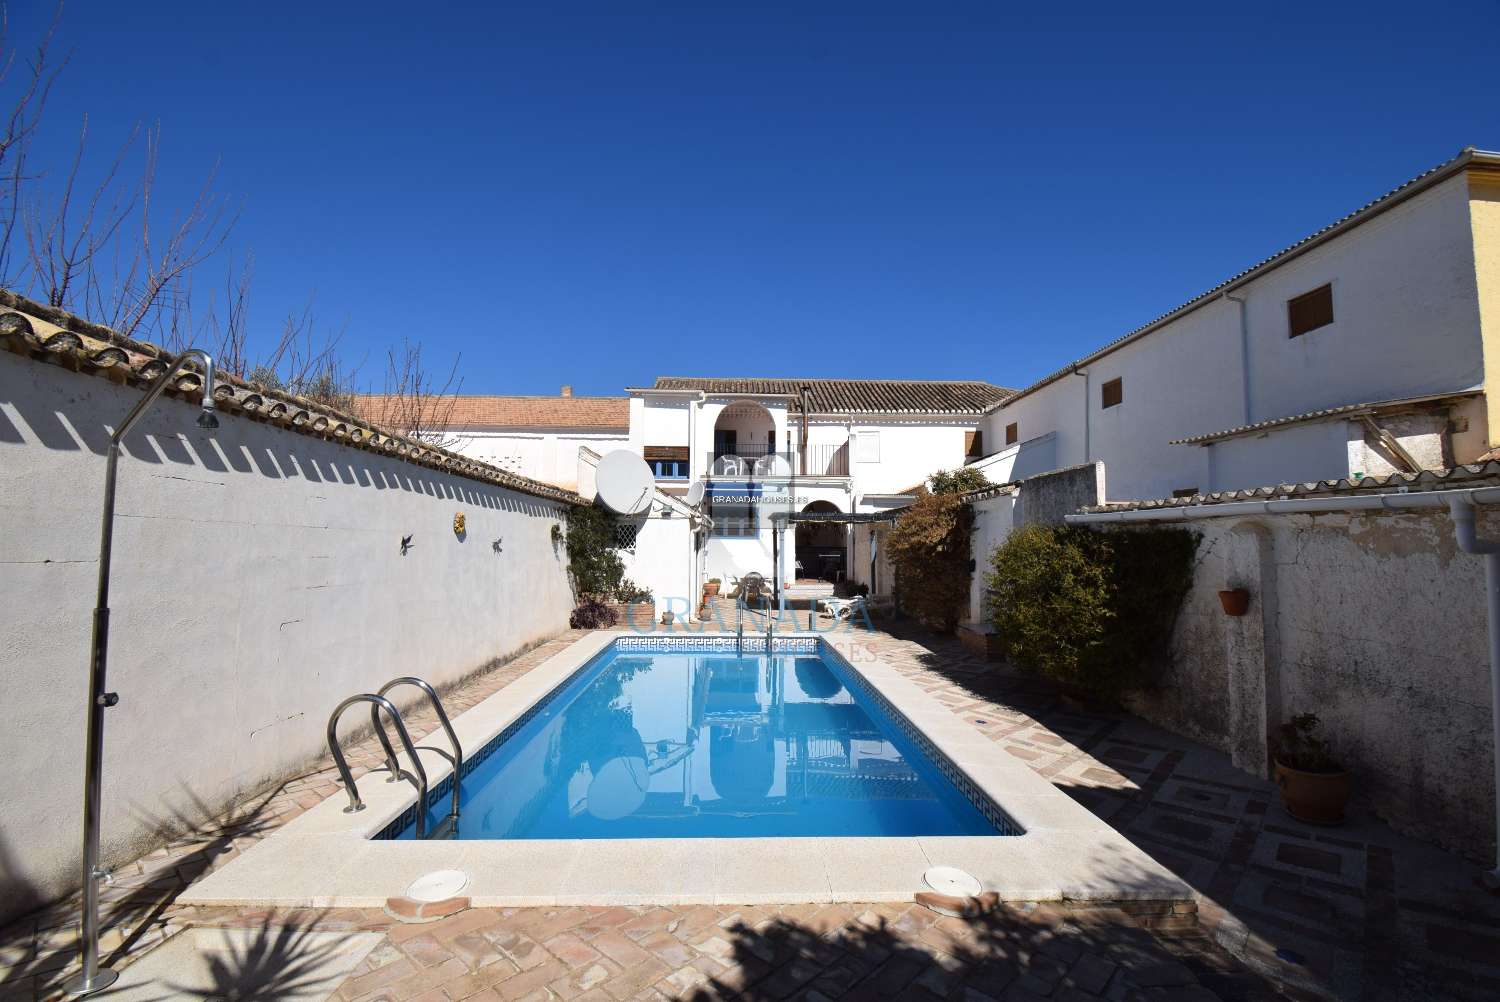 Schönes andalusisches Haus mit großer Terrasse und Pool